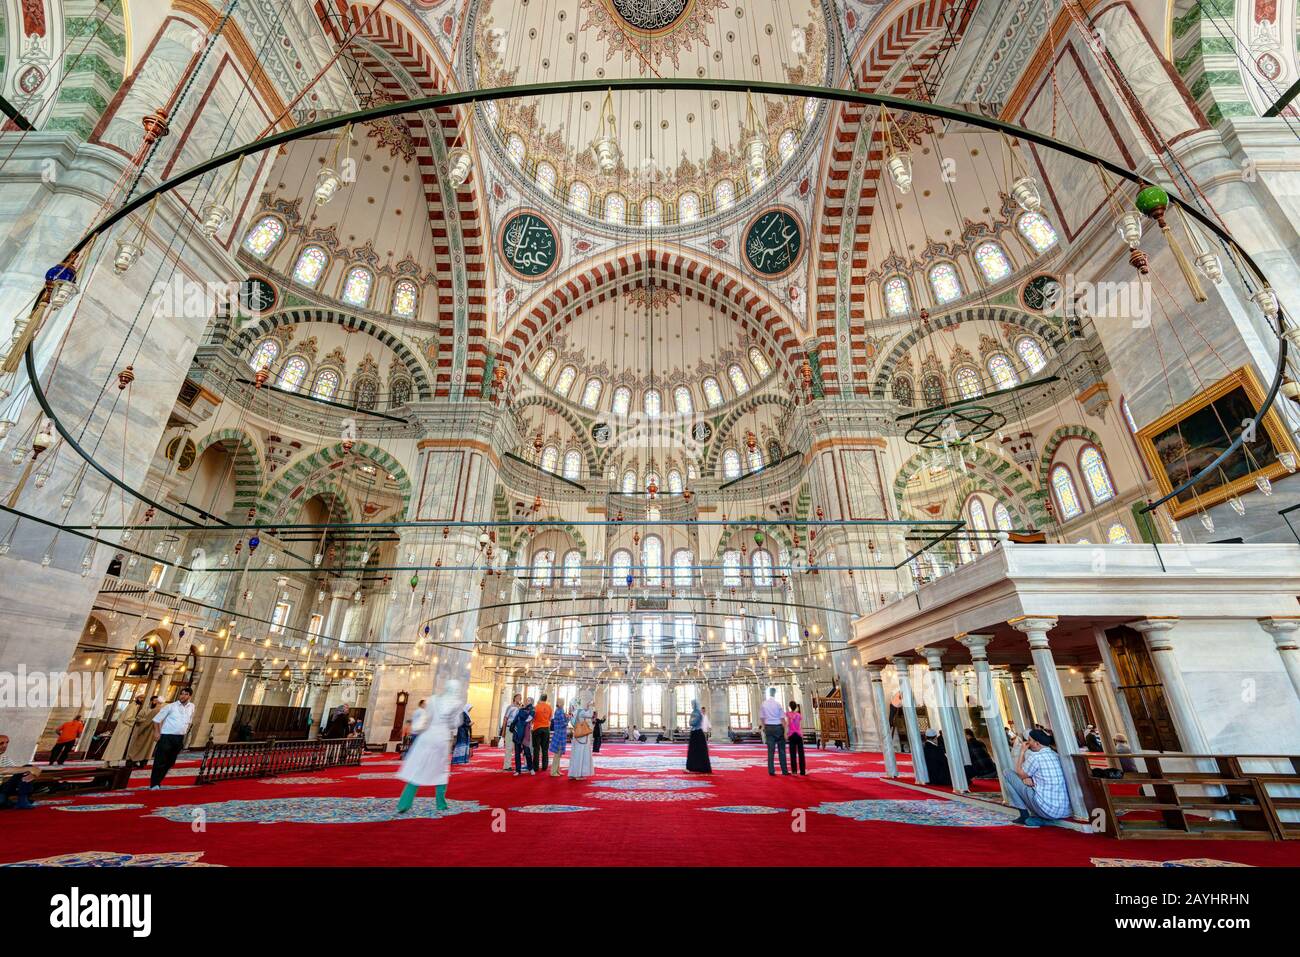 Istanbul - 26 MAGGIO: All'interno della Moschea Fatih il 26 maggio 2013 a Istanbul, Turchia. La Moschea Fatih (Moschea del Conquistatore) è uno dei più grandi exa Foto Stock